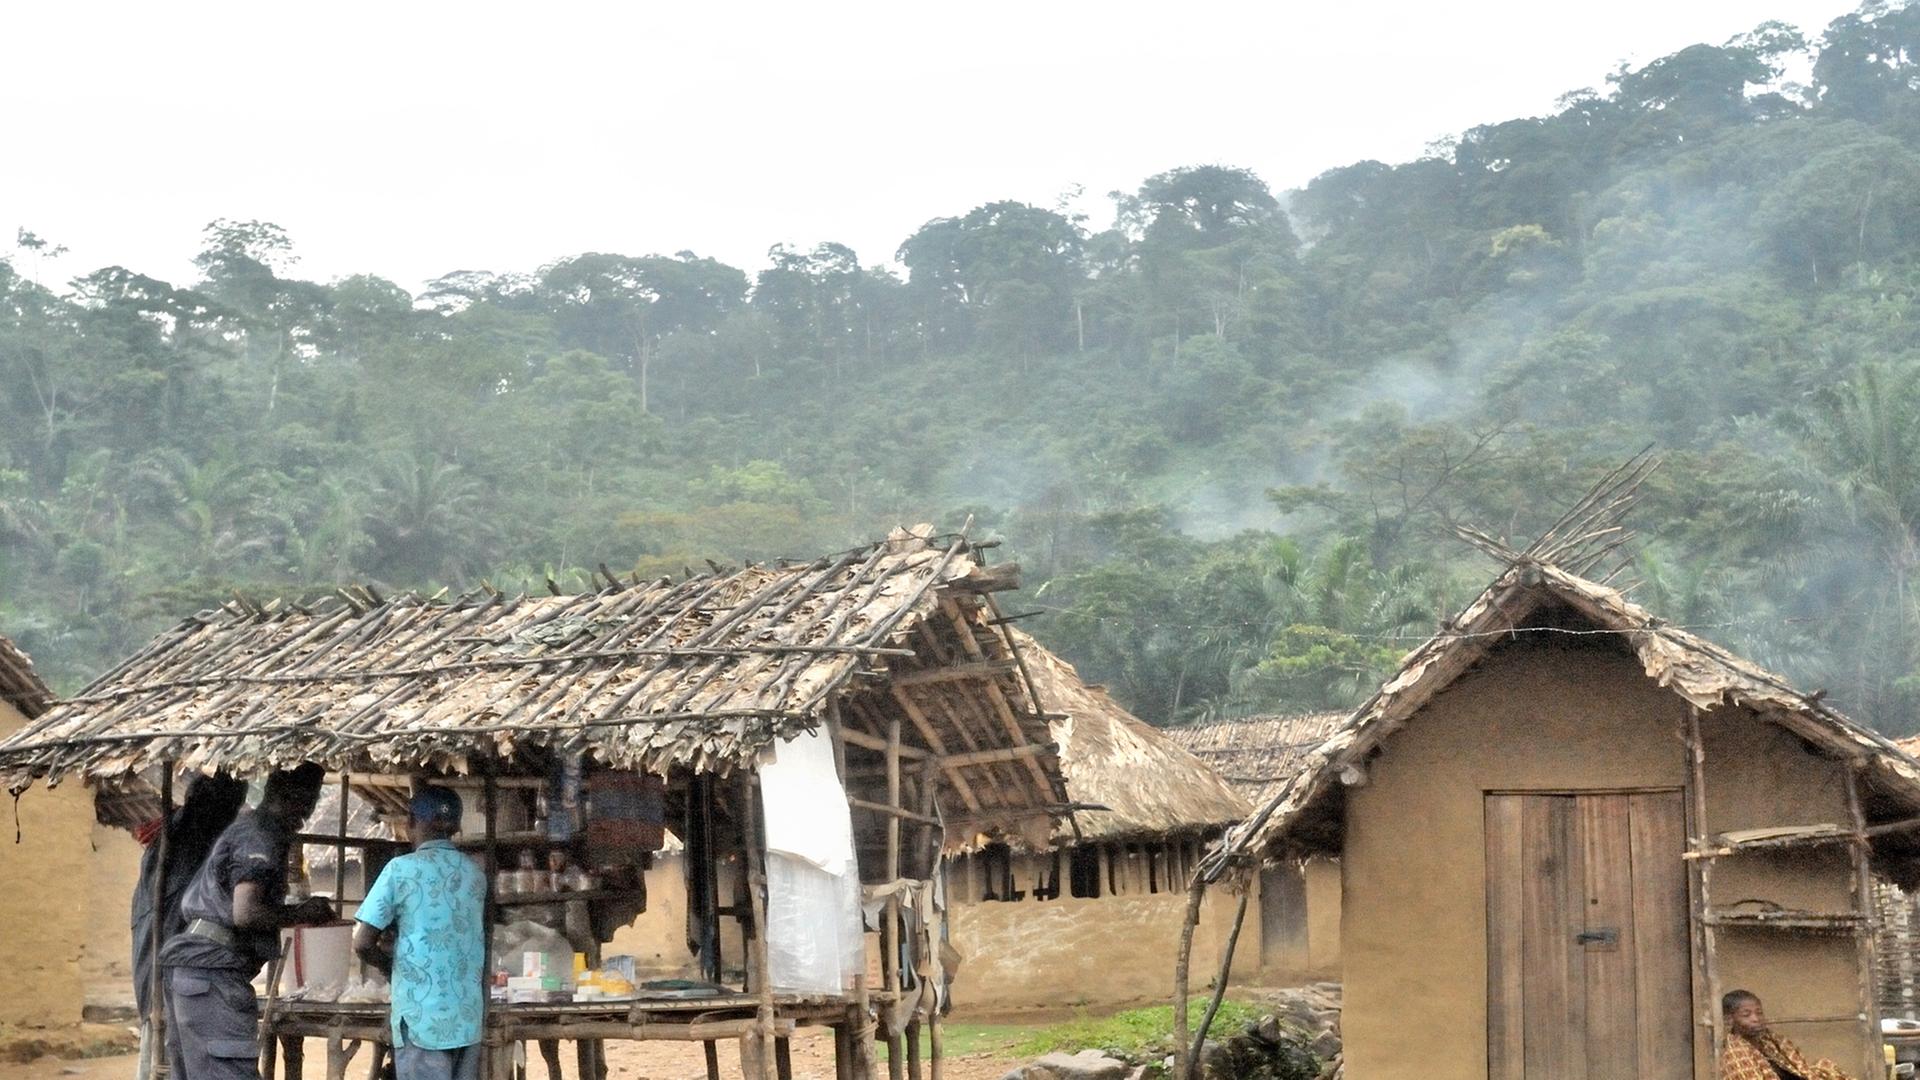 In der Ortschaft Luvungi in der Provinz Nord-Kivu im Osten der Demokratischen Republik Kongo wurden 2010 mindestens 242 Frauen, darunter auch 20 Kinder von den FDLR-Rebellen (Demokratische Kräfte zur Befreiung Ruandas) vergewaltigt.